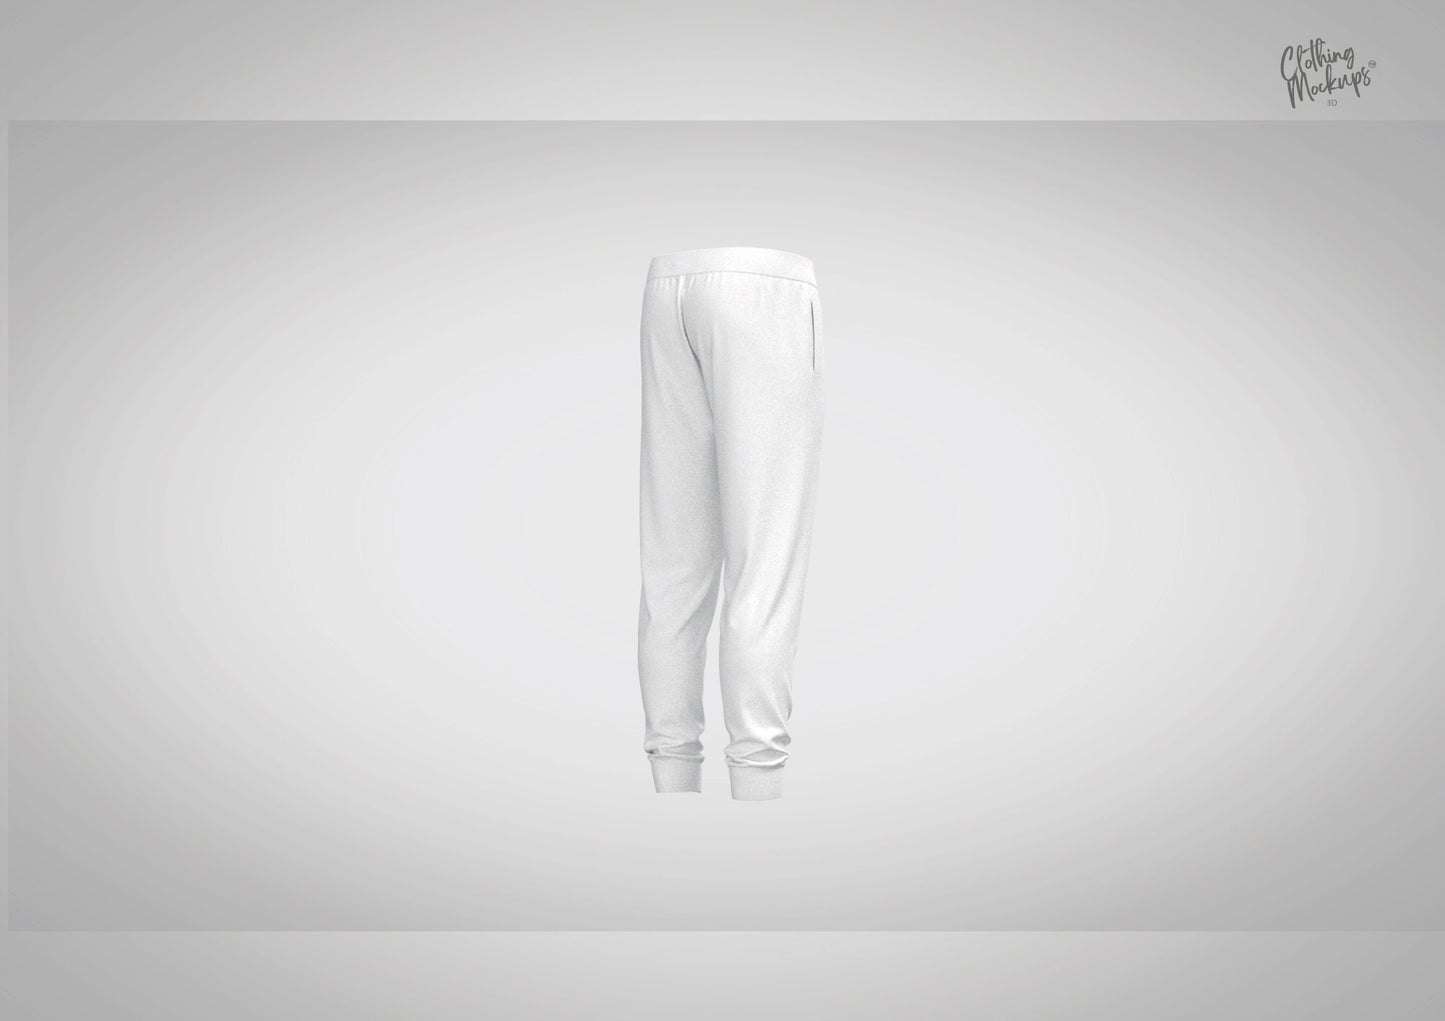 3D Sweatpants - Procreate/ OBJ / FBX / Marvelous Designer / CLO3D